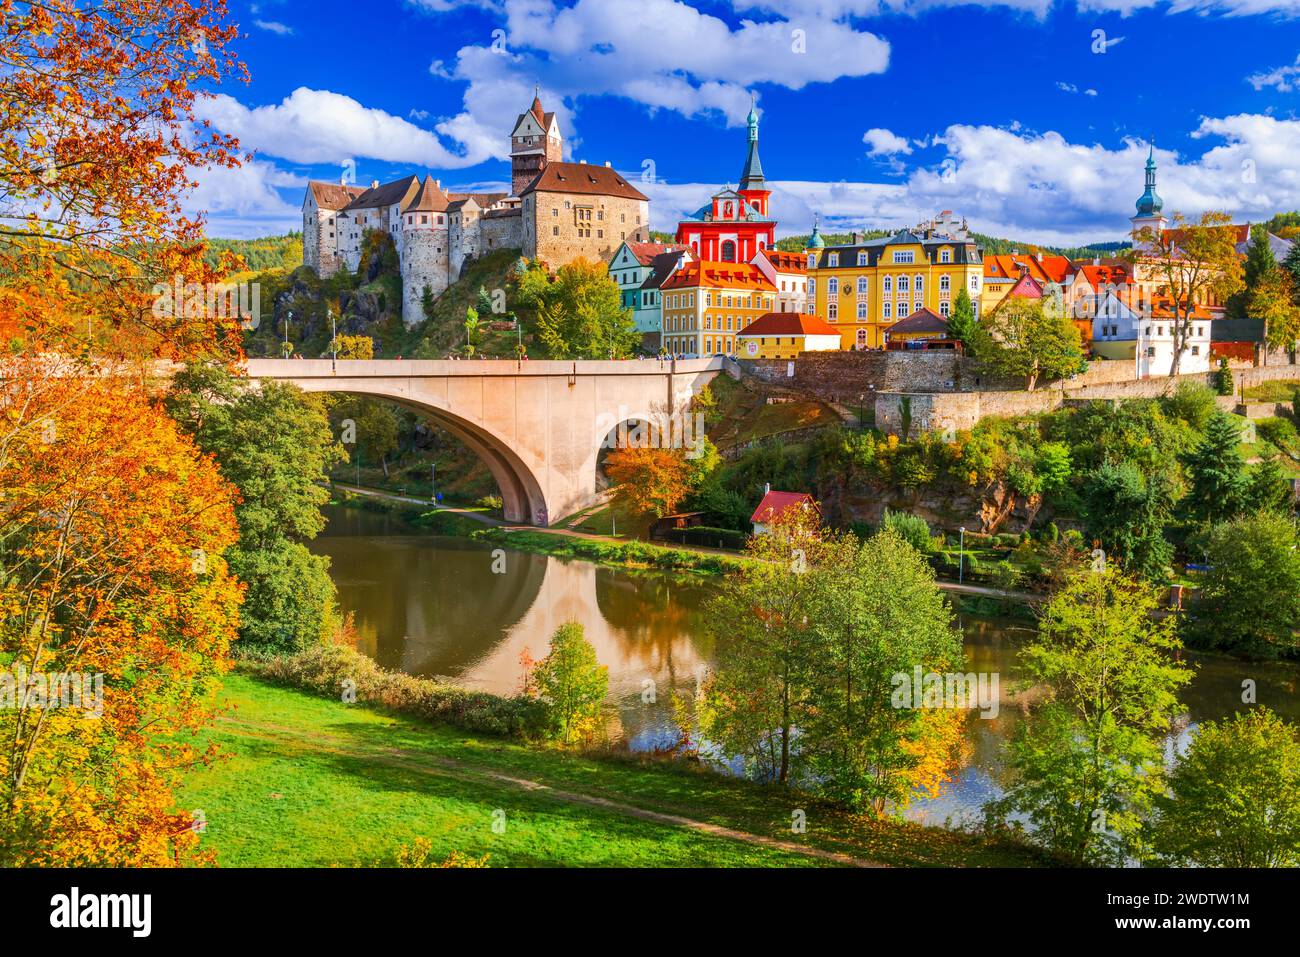 Loket, République tchèque. Charmante vieille ville colorée dans les Sudètes, Ohre River automne pittoresque en Bohême. Banque D'Images